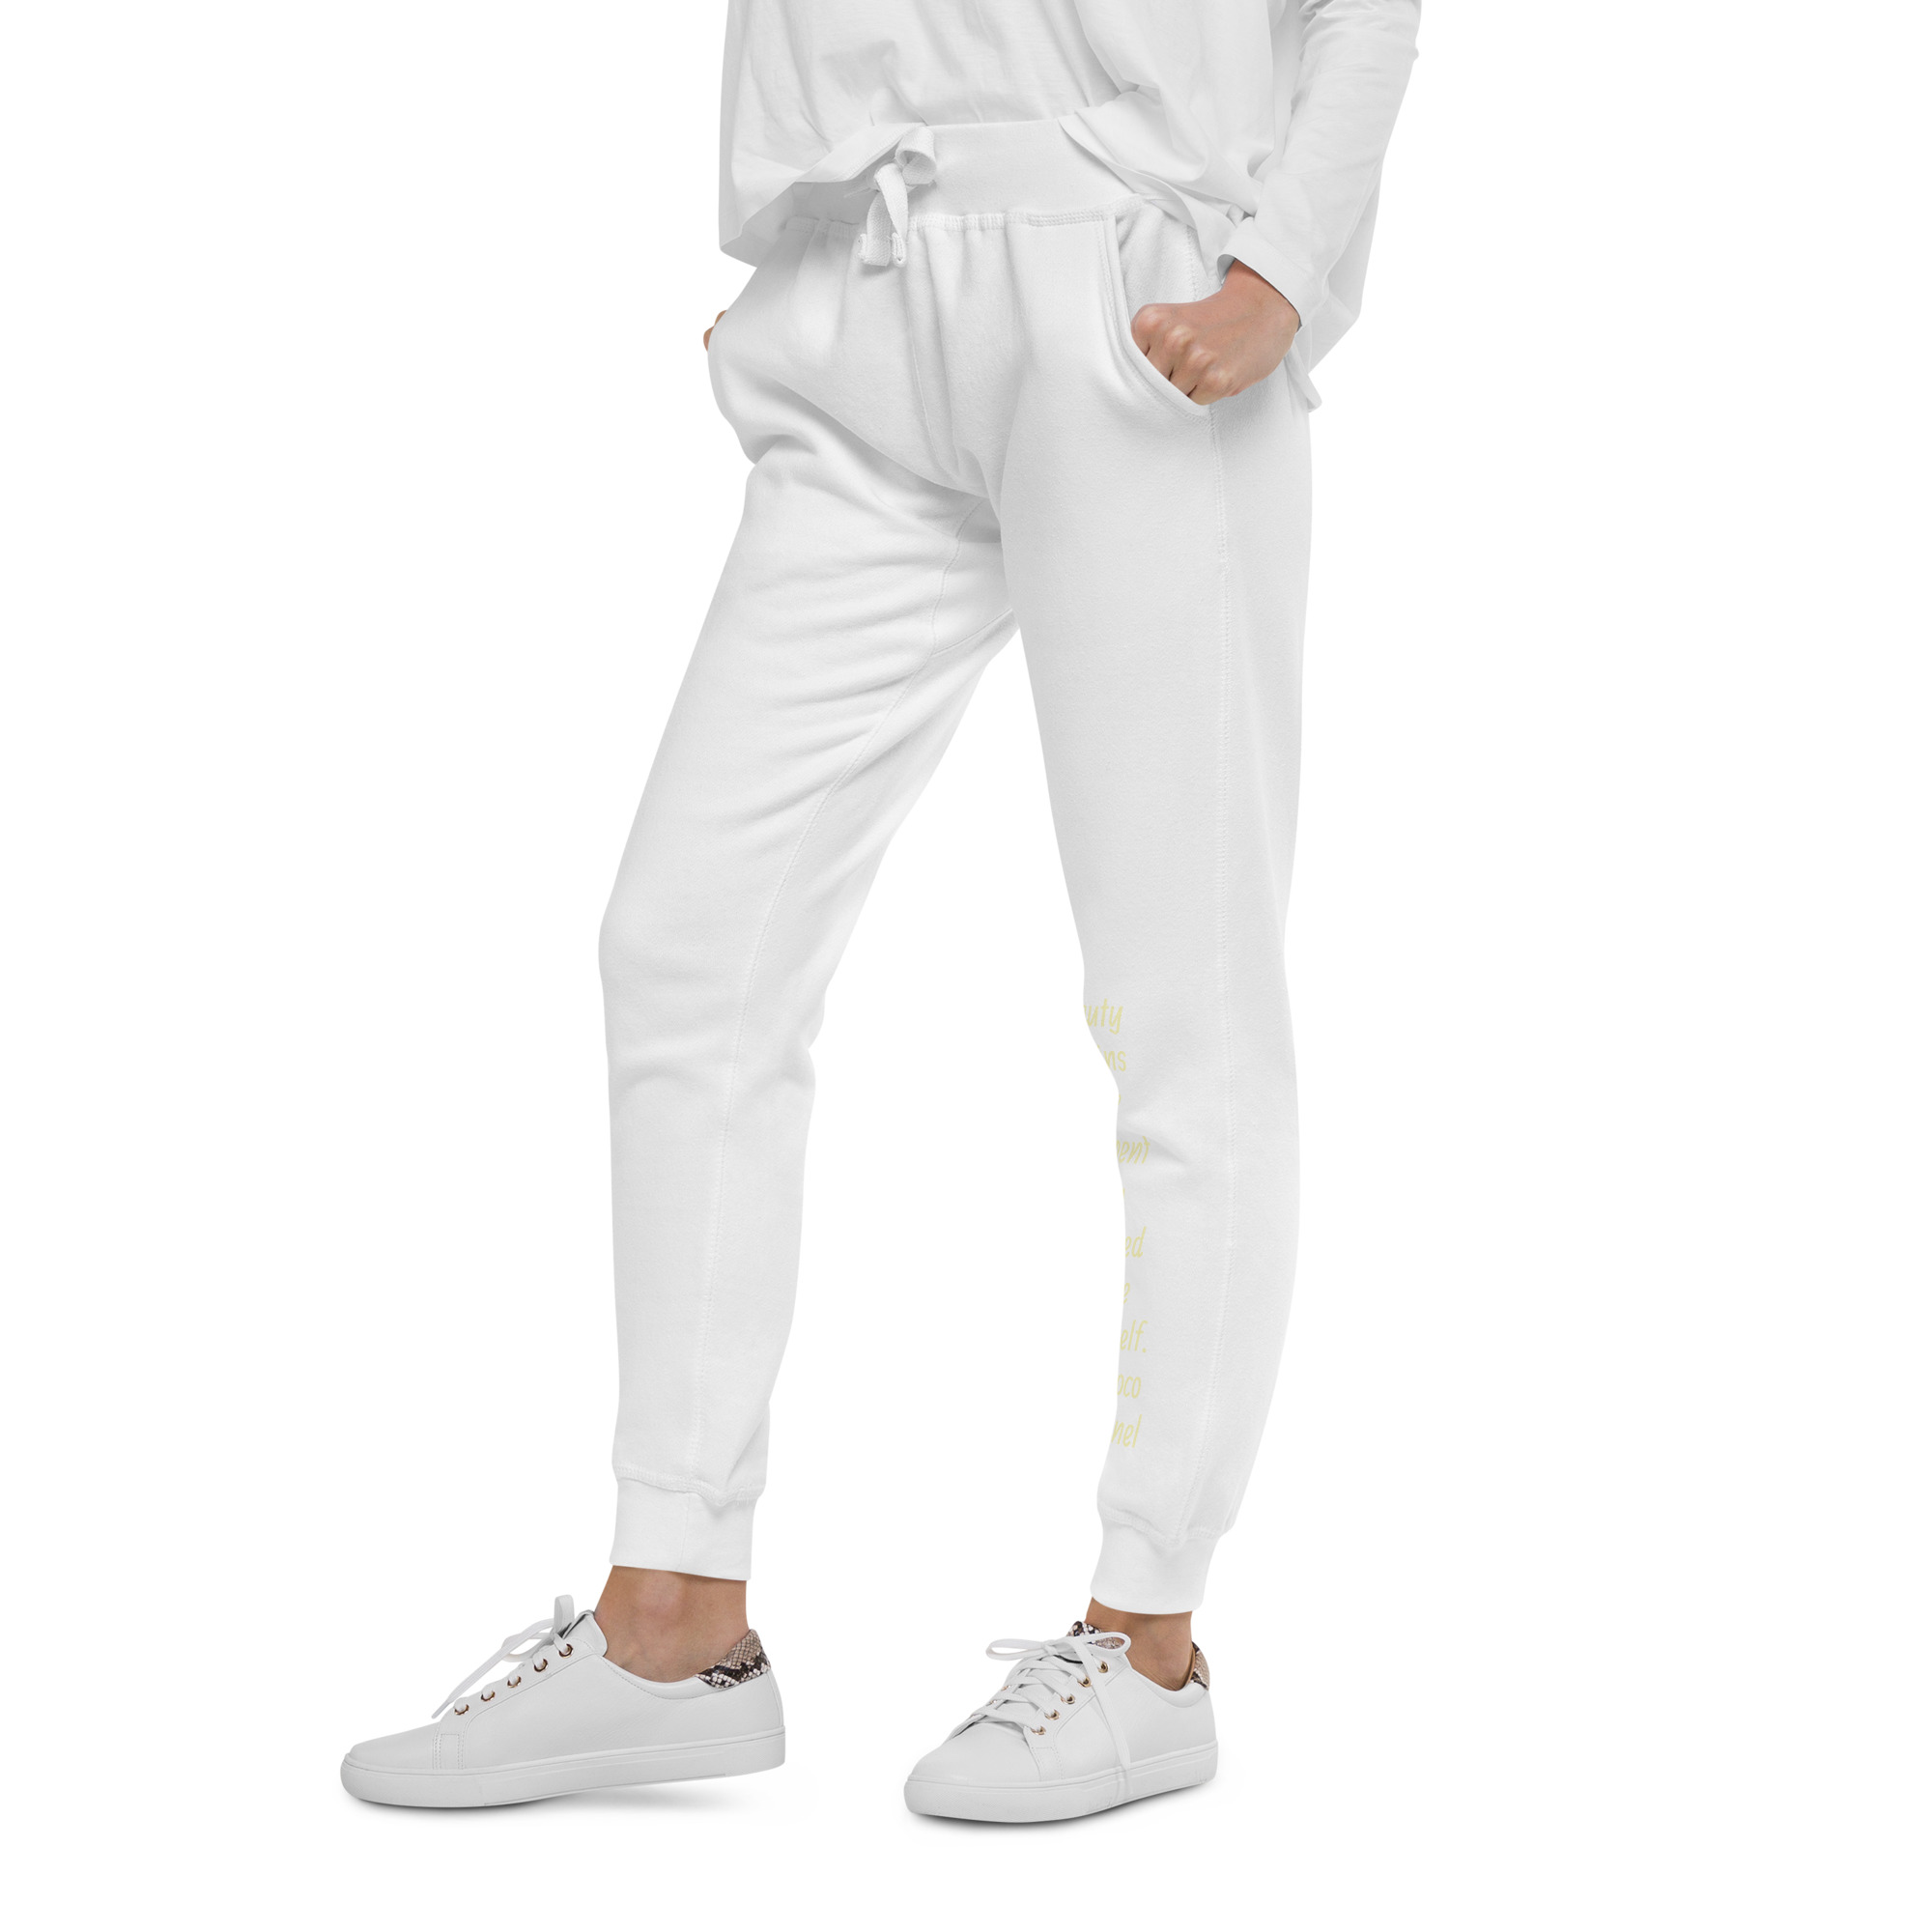 unisex-fleece-sweatpants-white-left-front-654be94416f8e.jpg